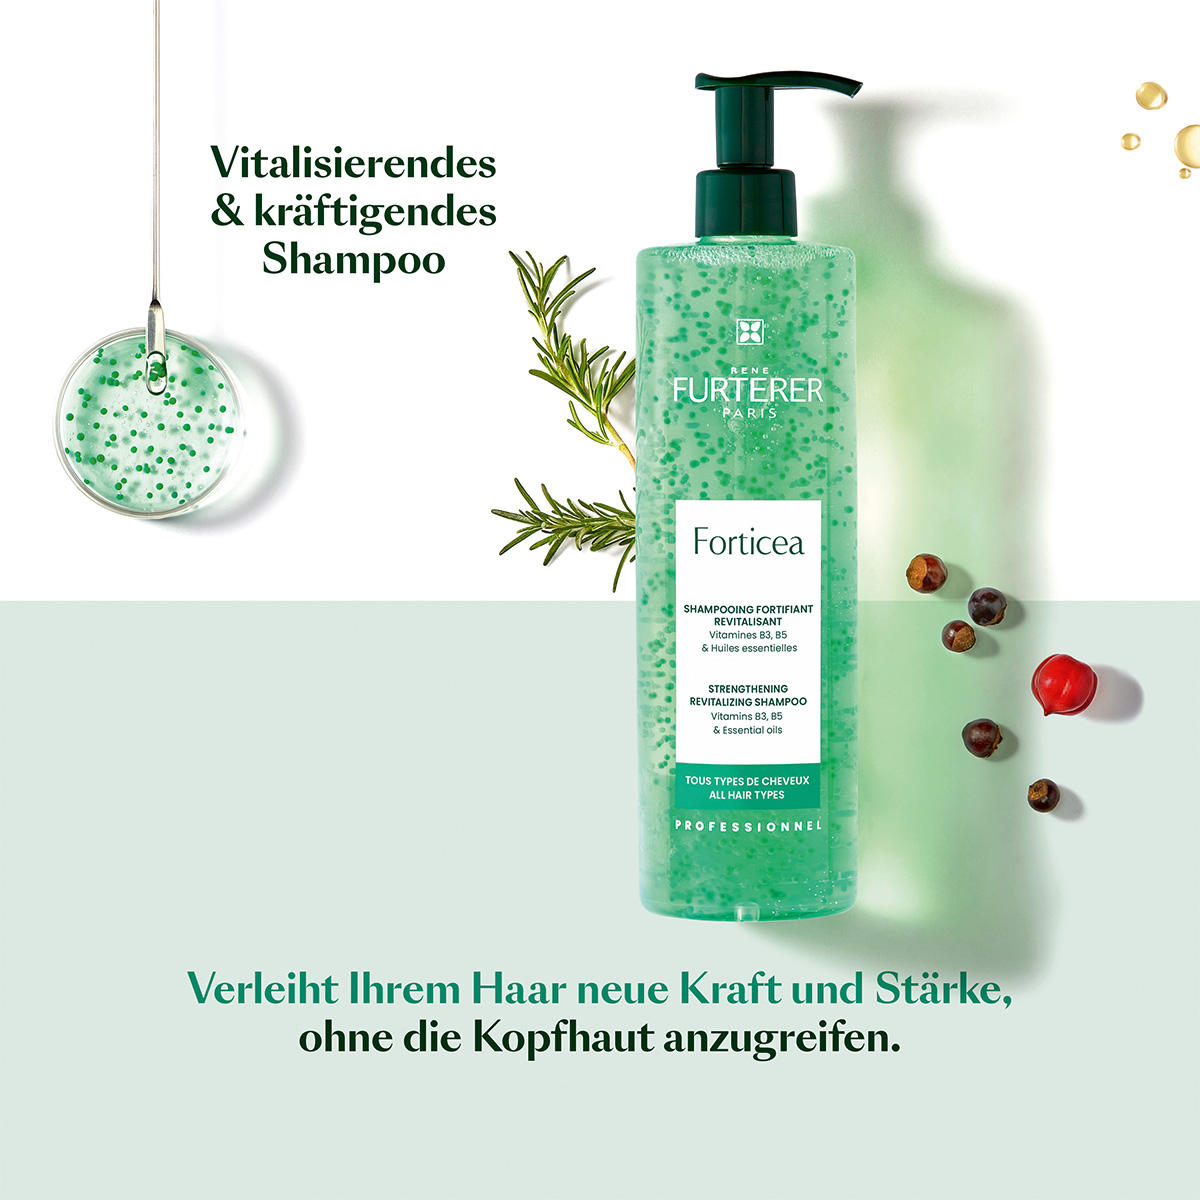 René Furterer Forticea Vitaliserende verkwikkende shampoo 600 ml - 7